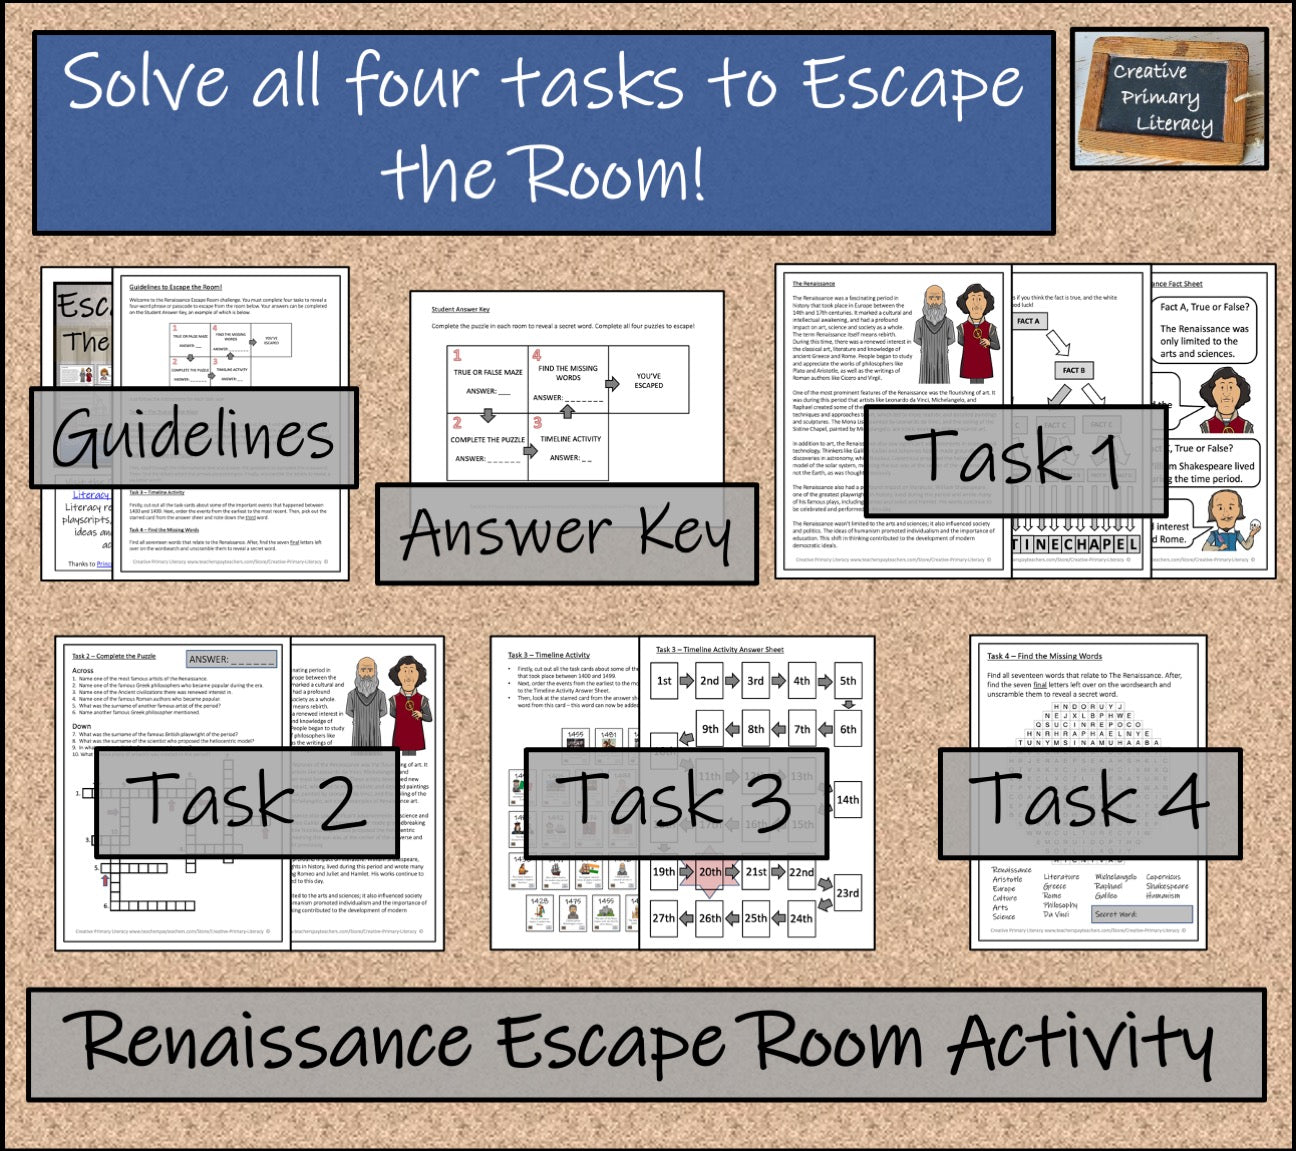 The Renaissance Escape Room Activity